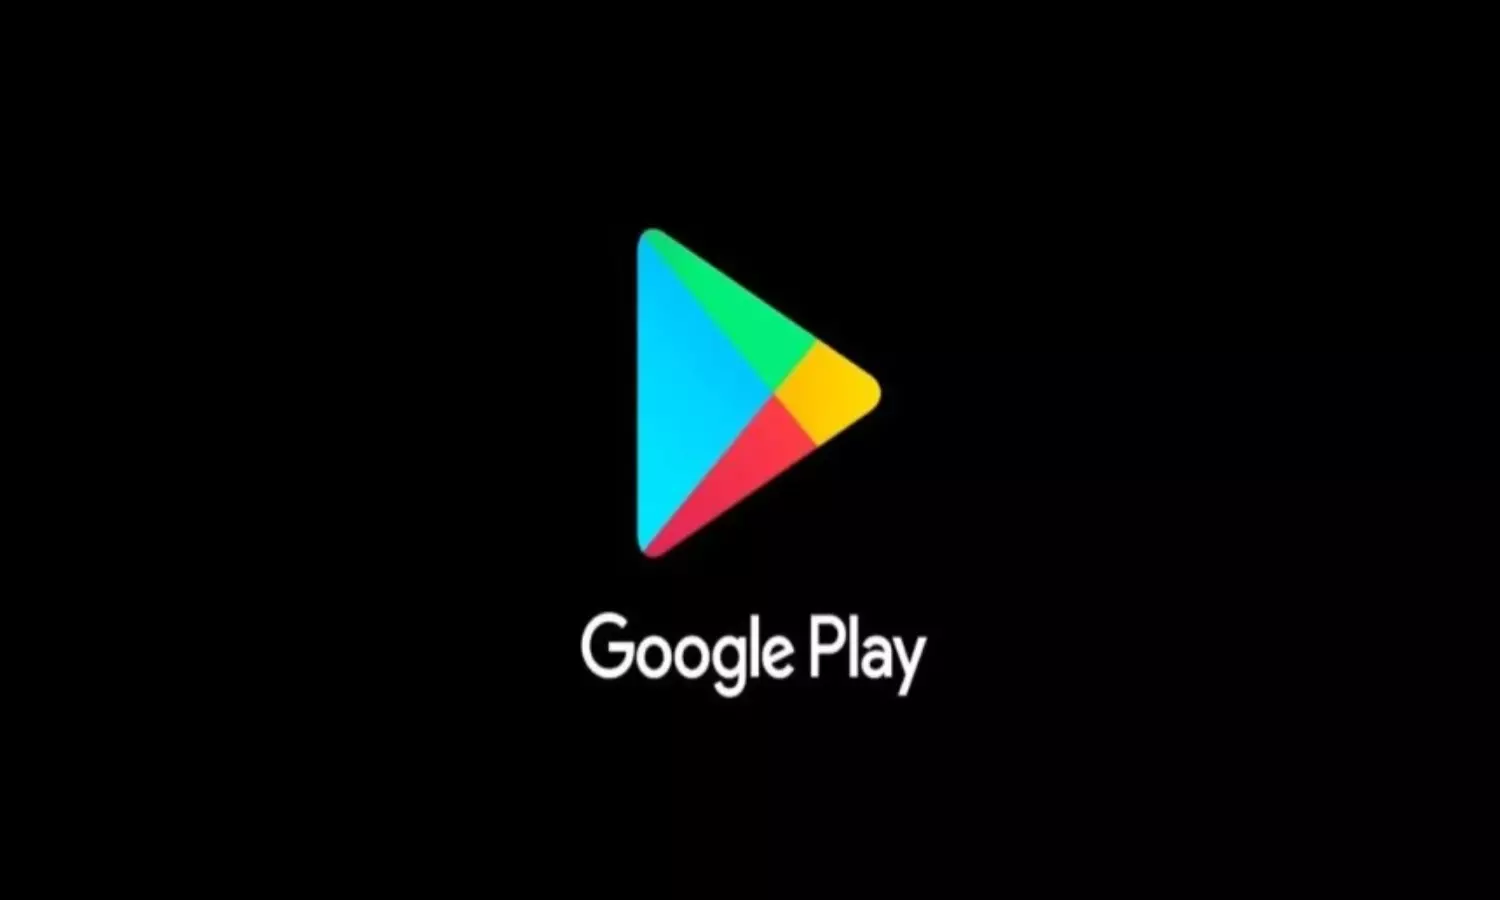 Google Play Apps: गूगल की बड़ी कार्रवाई, Play Store से हटाए ये 10 भारतीय मोबाइल ऐप्स